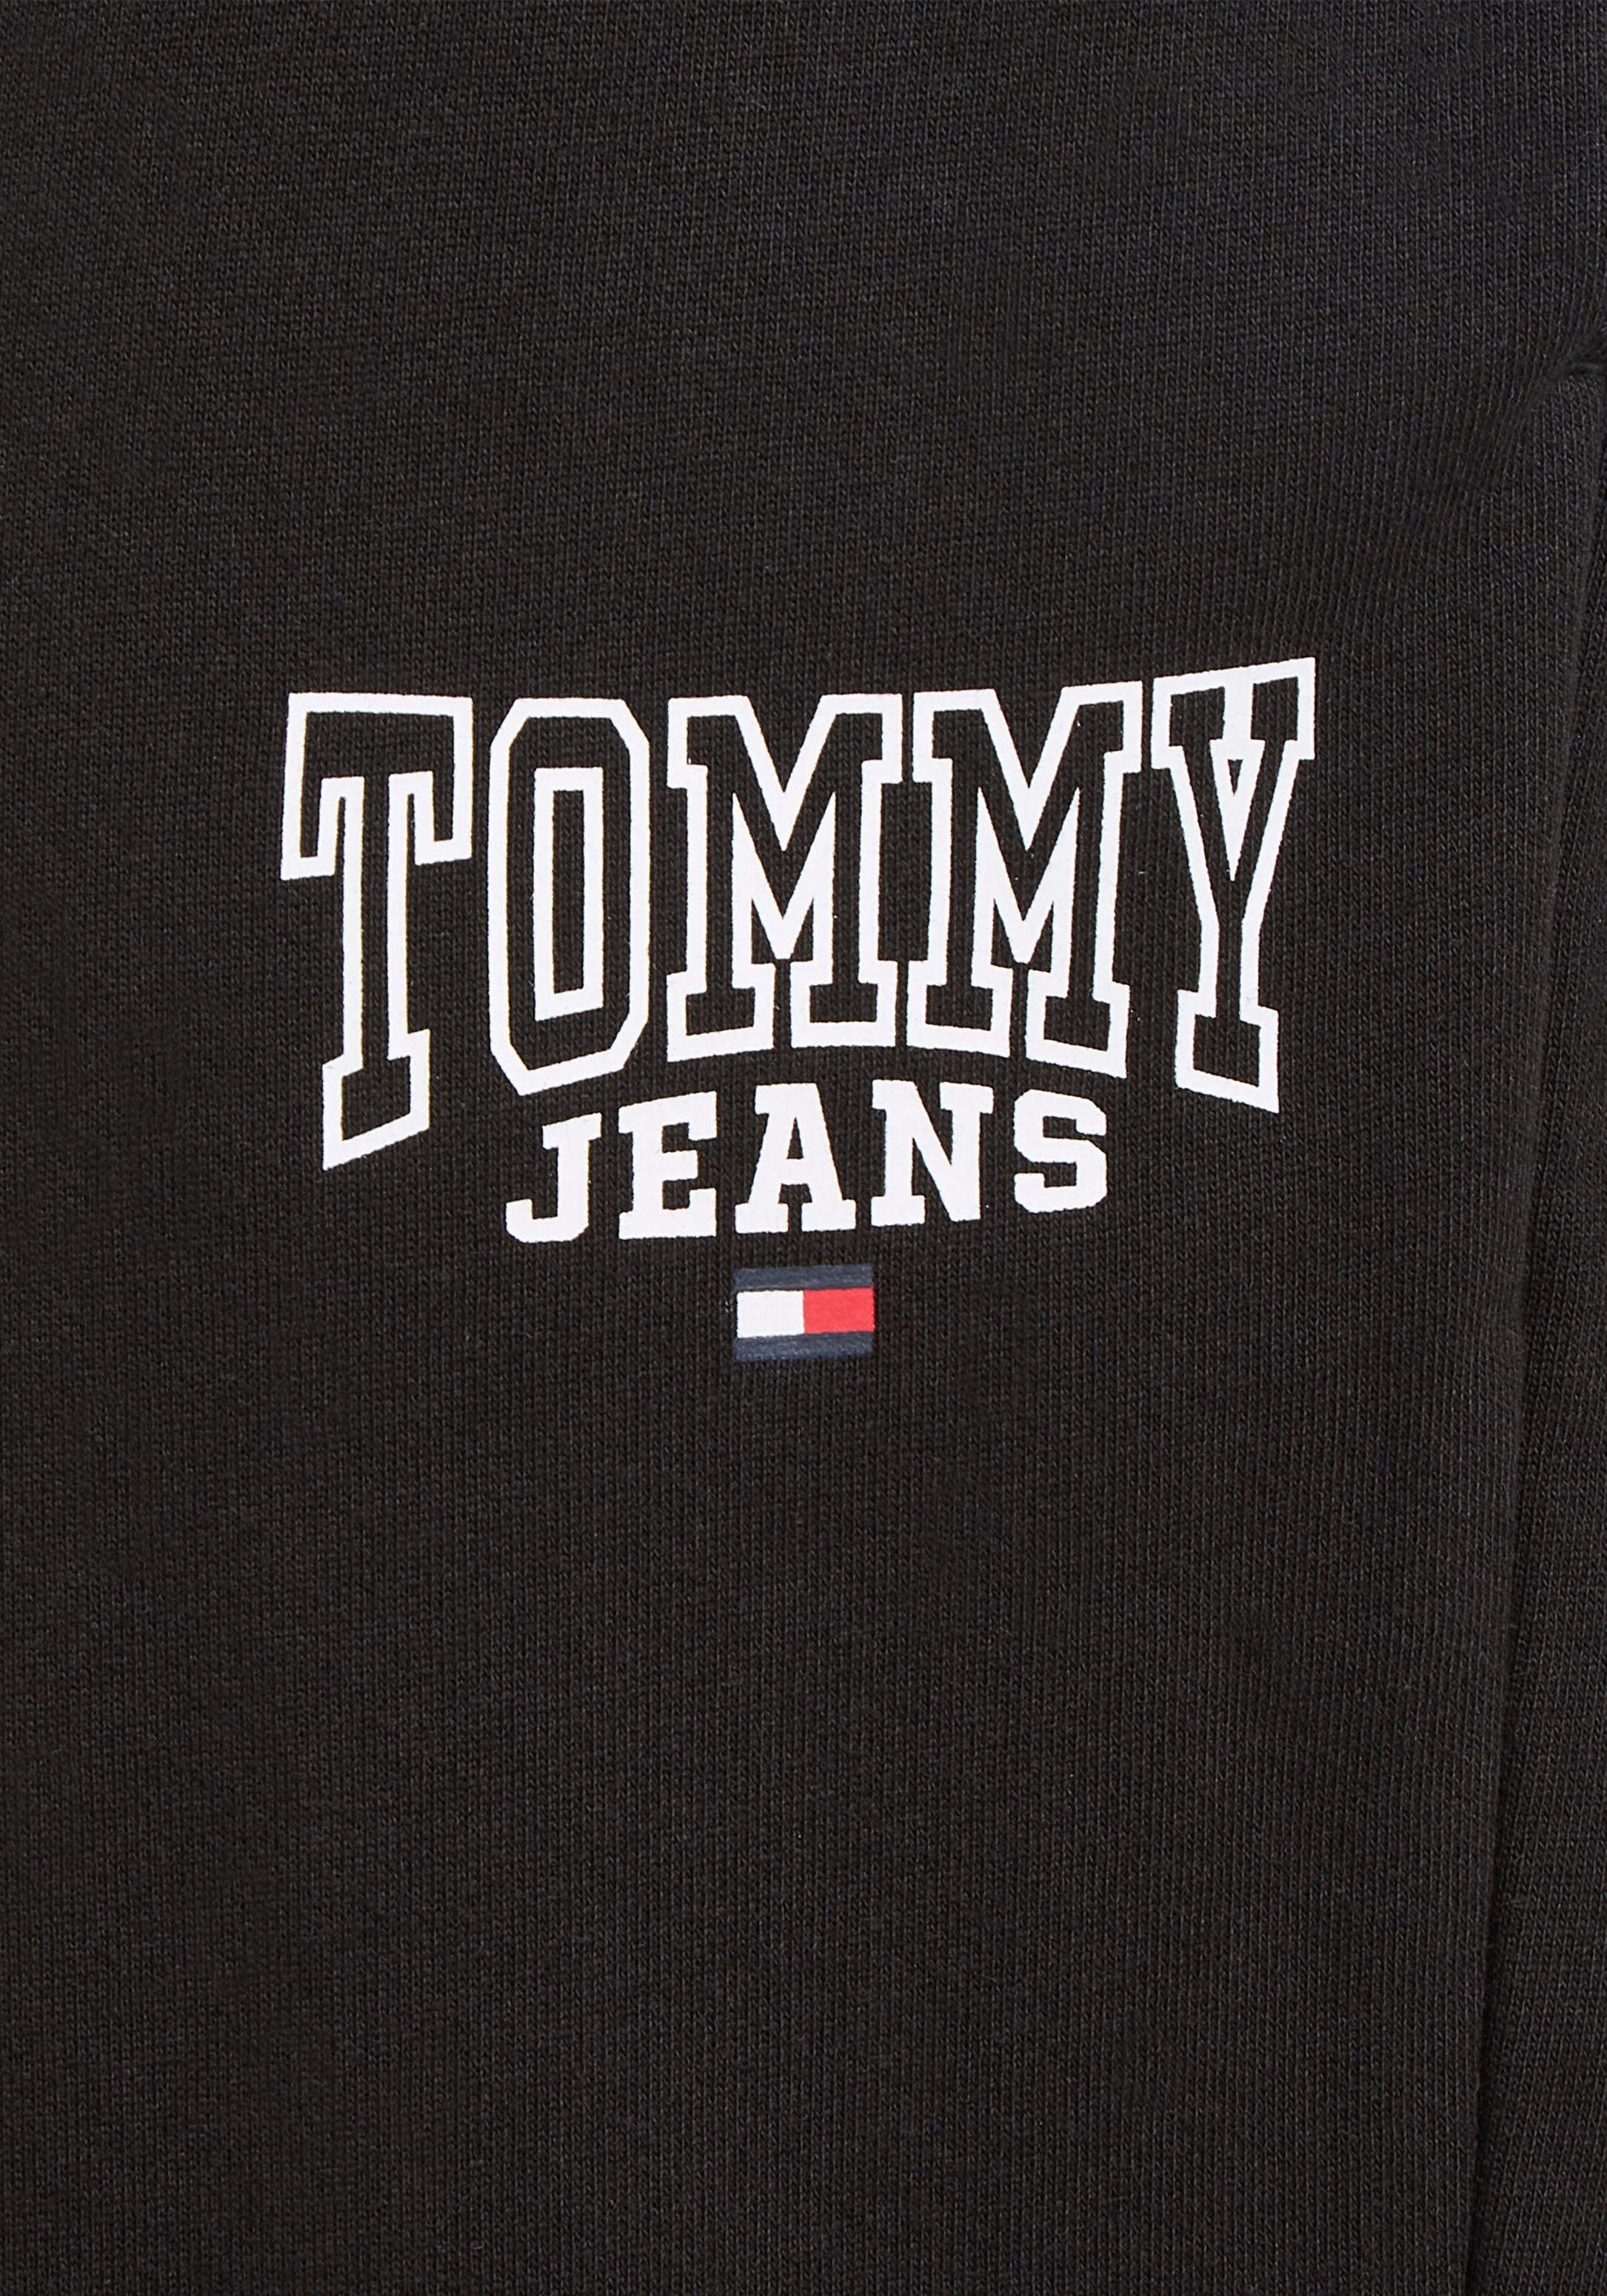 Tommy ENTRY Jeans SWTPNT Sweathose PLUS SLIM TJM Plus GRAPH